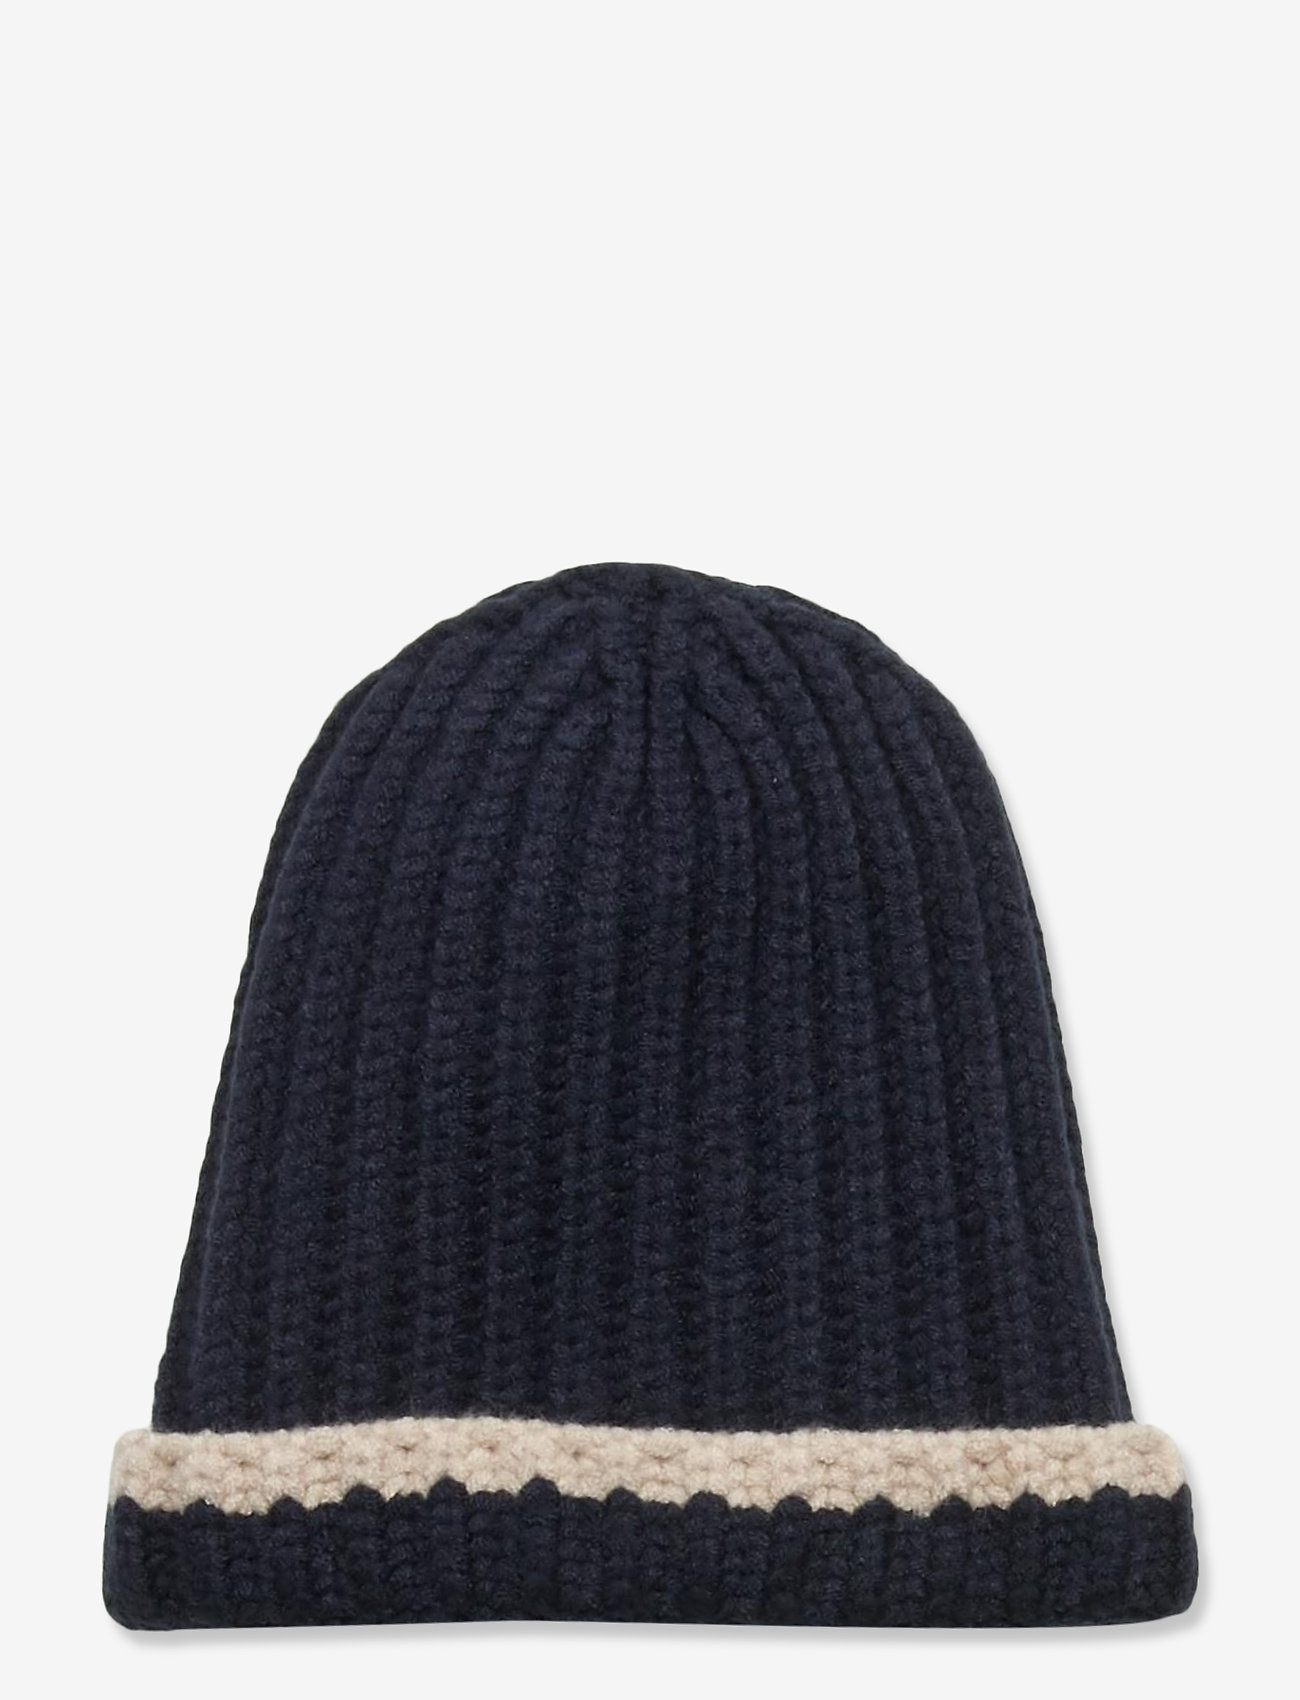 En Fant - Horizon Knit Hat - zemākās cenas - dark navy - 0